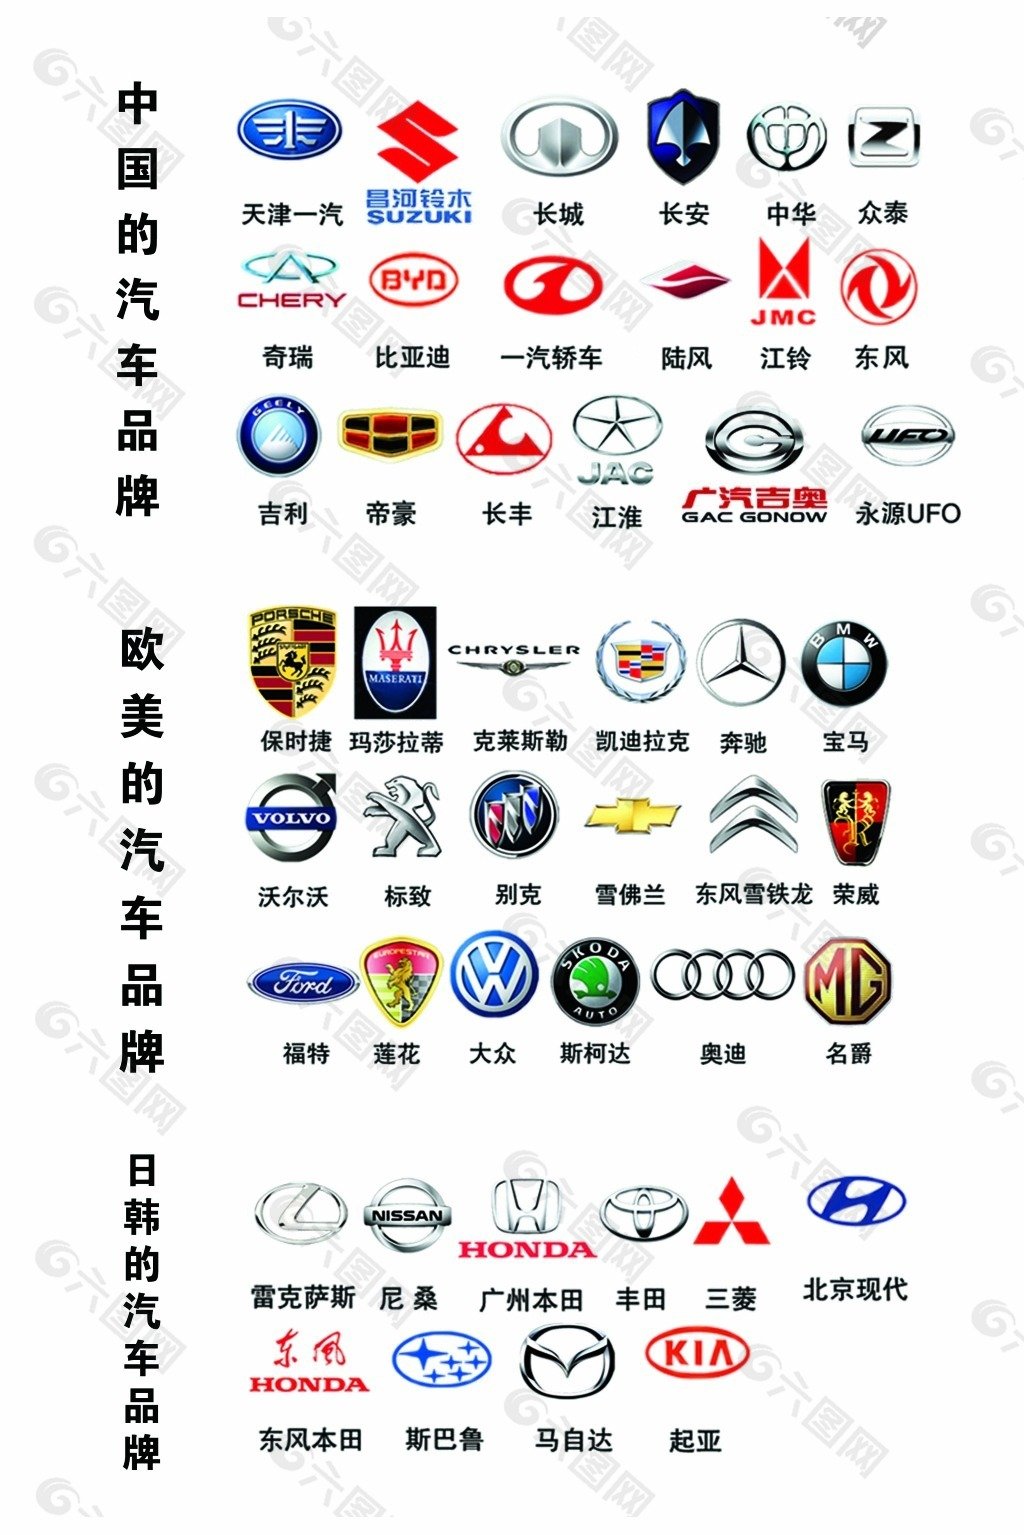 Значки китайских автомобилей всех марок. Марки автомобилей. Значки авто. Марки автомобилей со значками. Марки китайских автомобилей со значками.